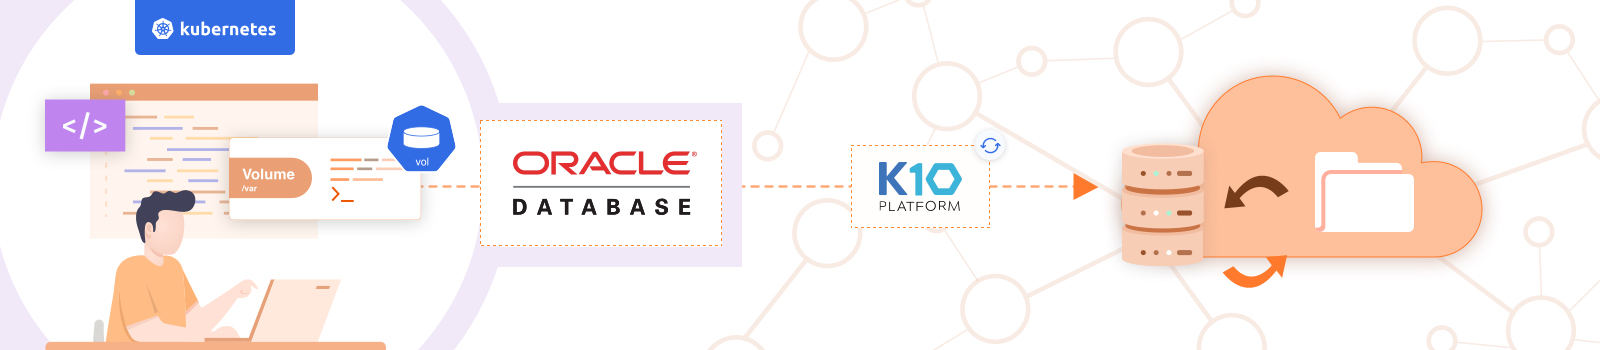 Oracle Database Backup and Recovery on Kubernetes using K10